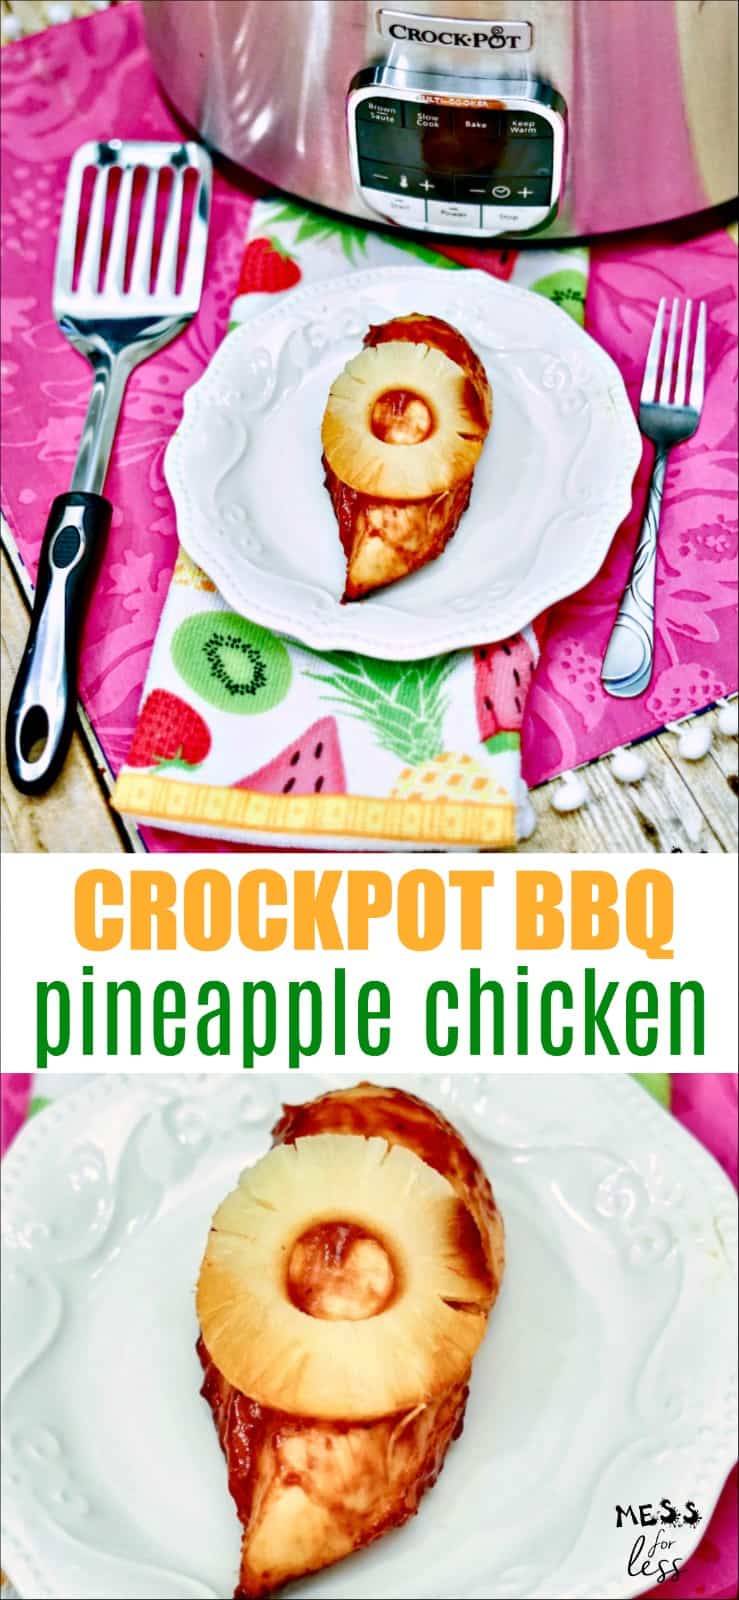 Crockpot Hawaiian BBQ Chicken